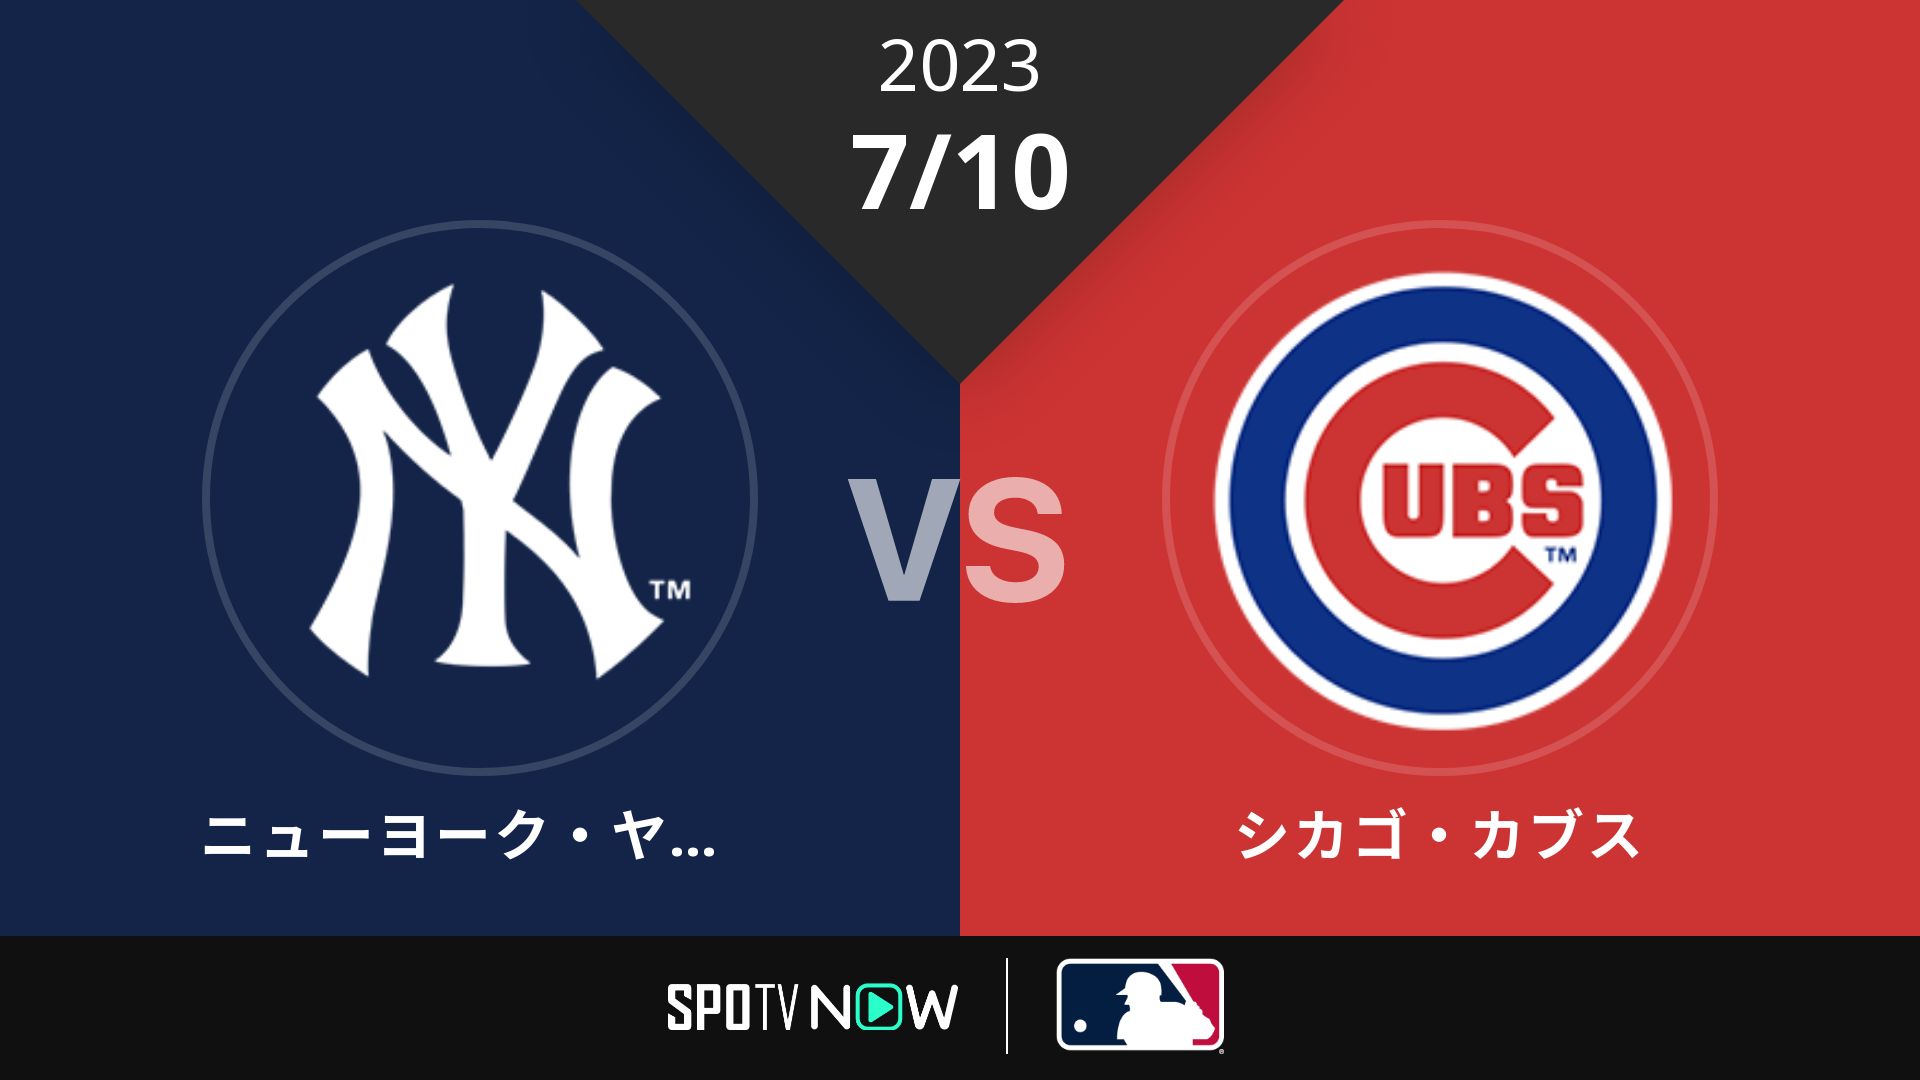 2023/7/10 ヤンキース vs カブス [MLB]